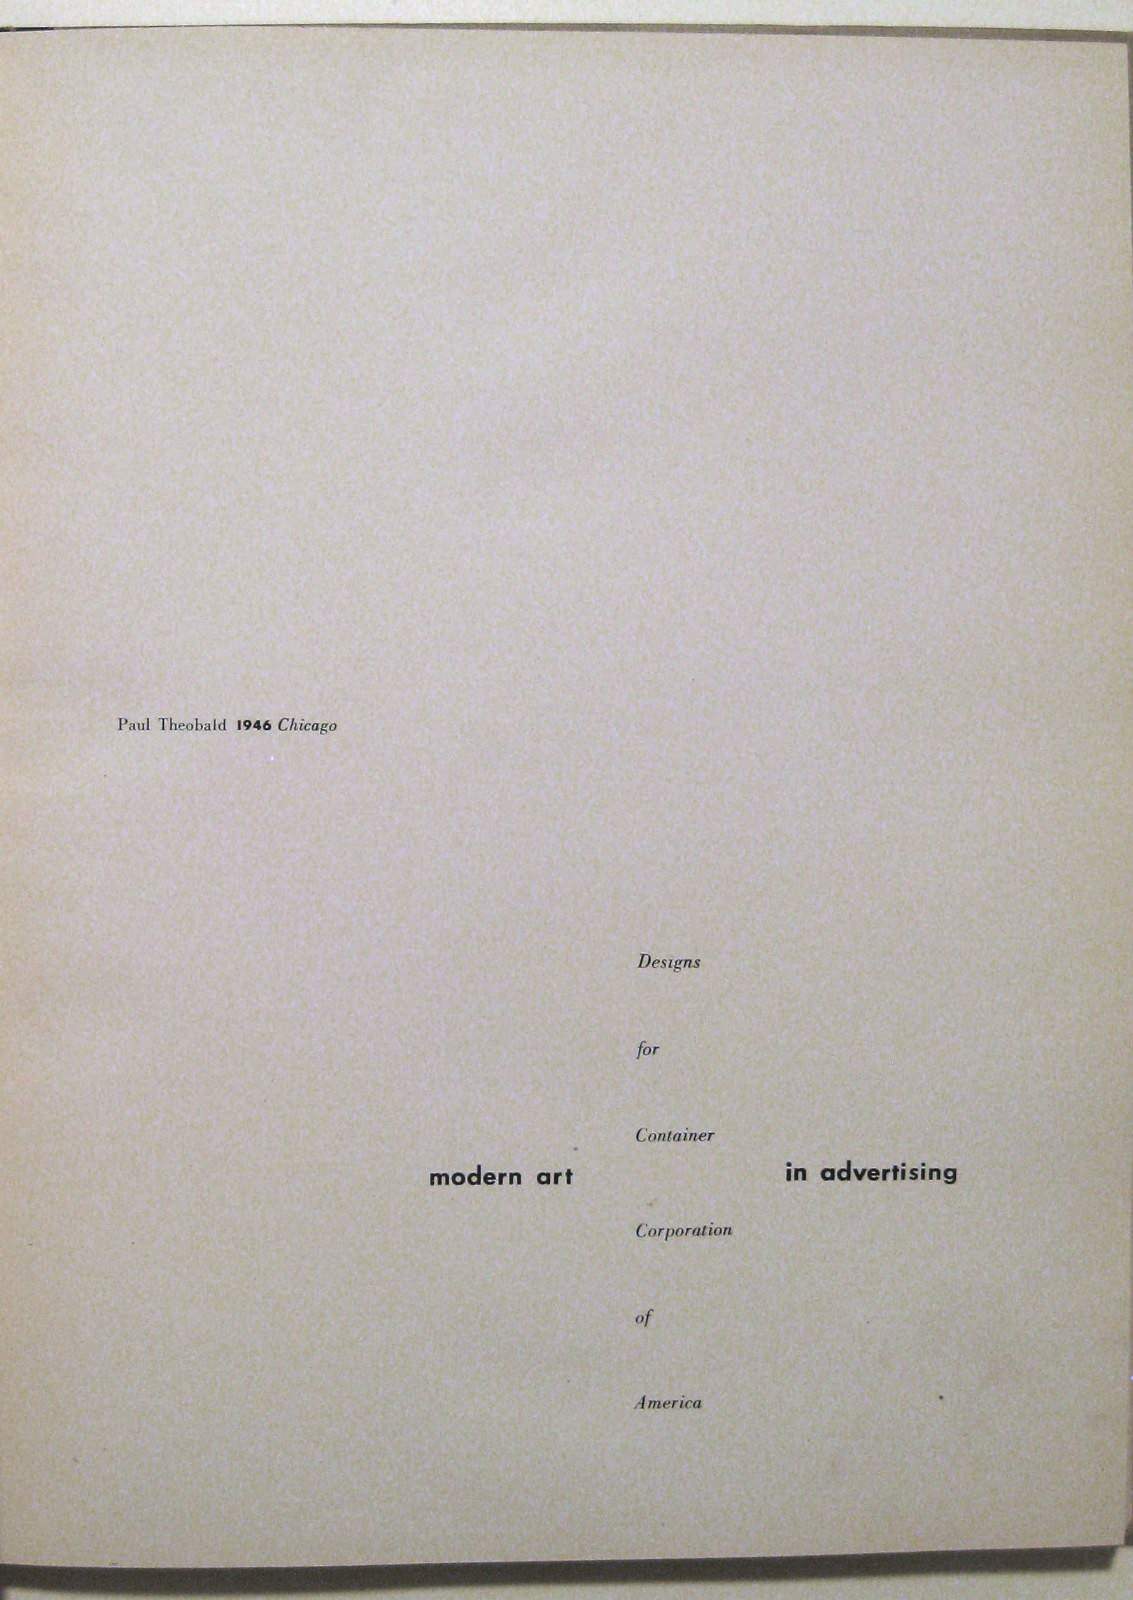 Modern Art in Advertising | Paul Rand: Modernist Master 1914-1996